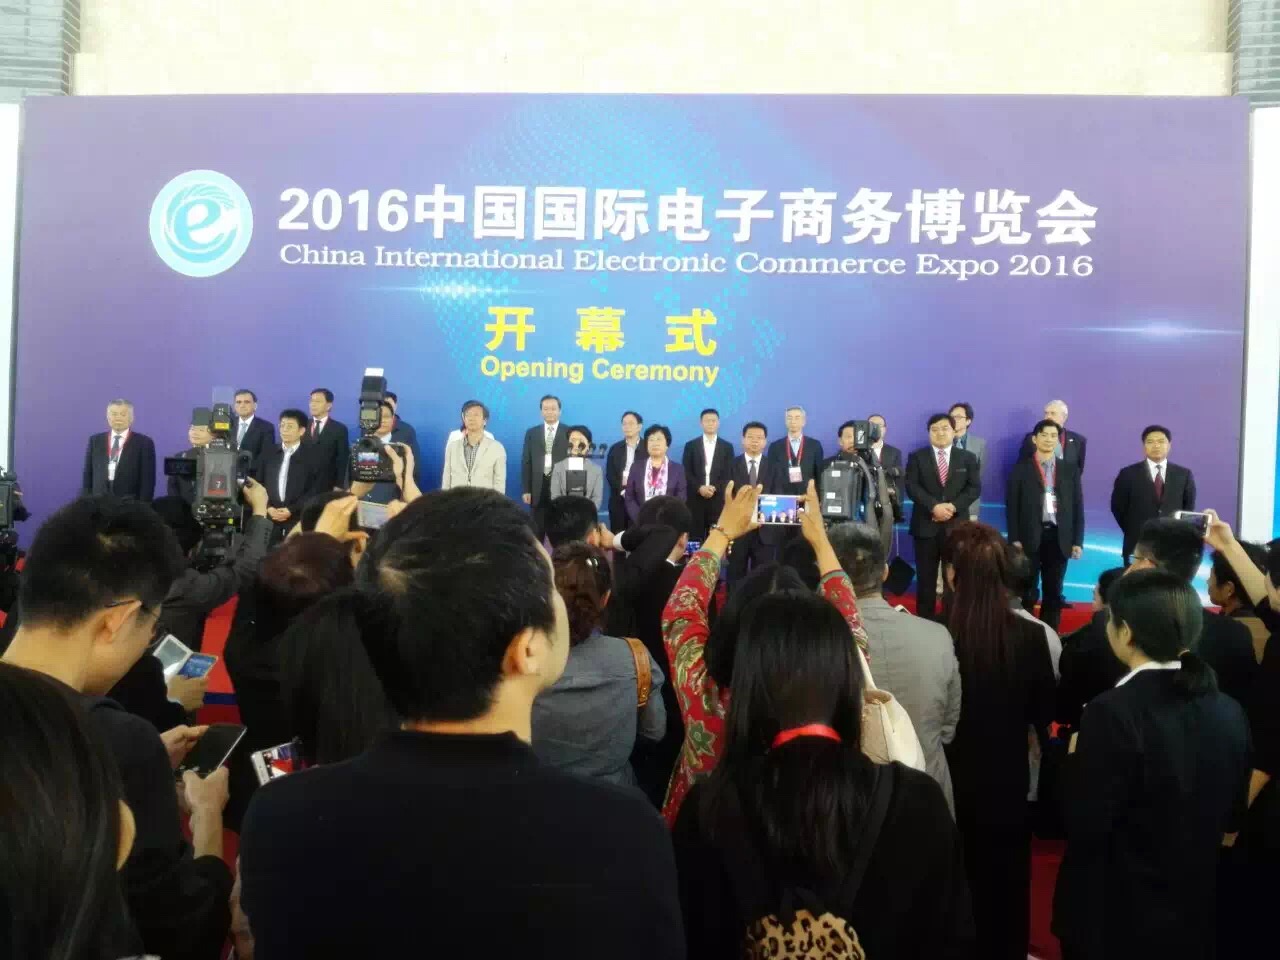 2017中国国际电商微商博览会